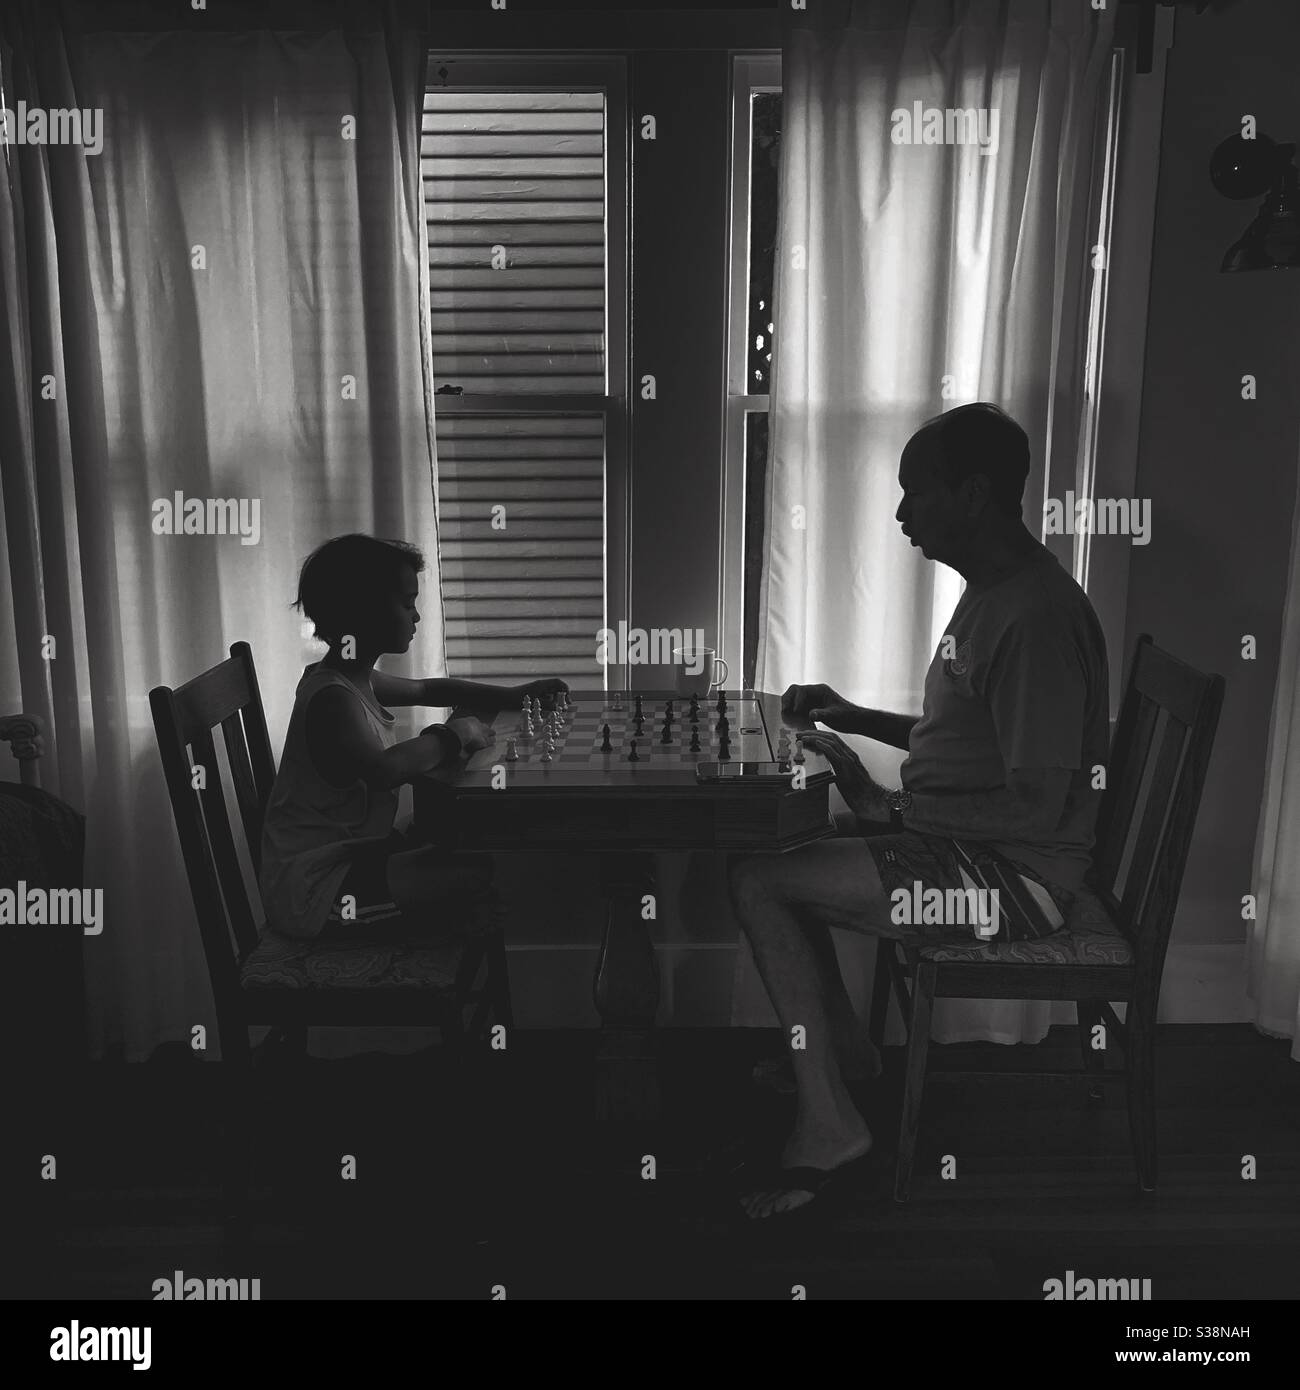 Image de silhouette noire et blanche d'un homme enseignant à un garçon comment jouer aux échecs. Banque D'Images